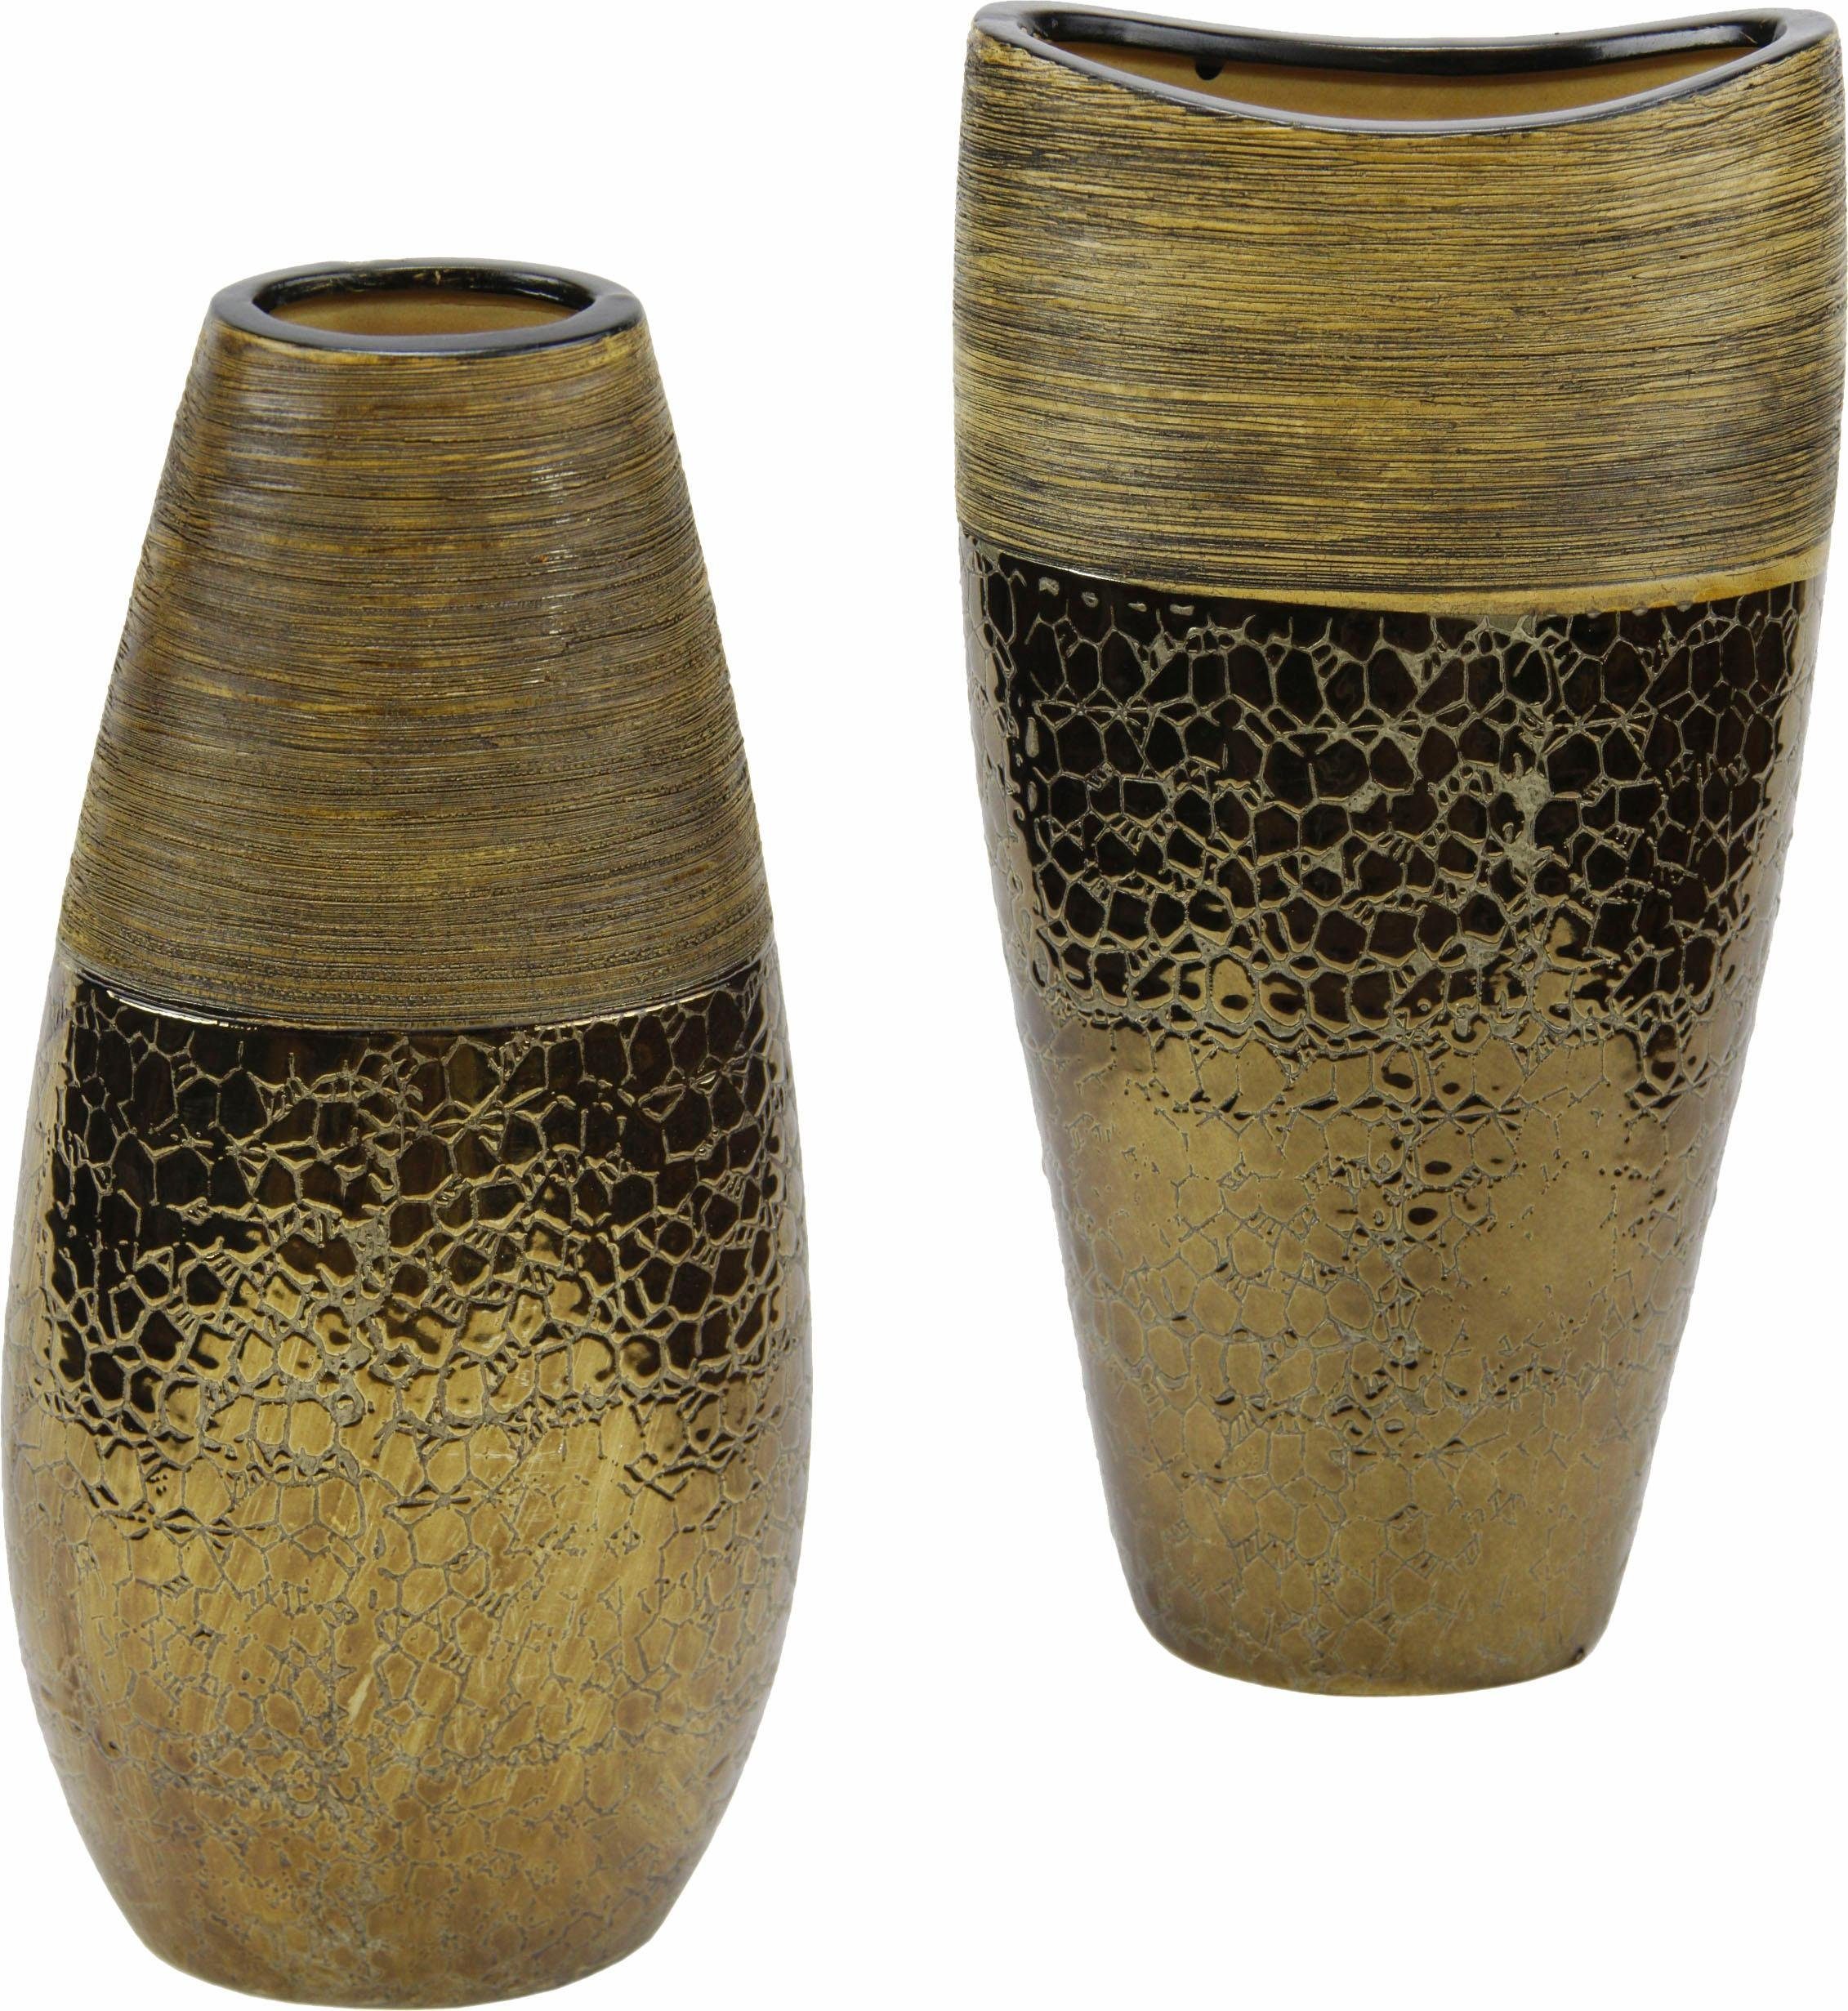 Home affaire Dekovase »Keramik-Vasen« (Set, 2 Stück) online kaufen | OTTO